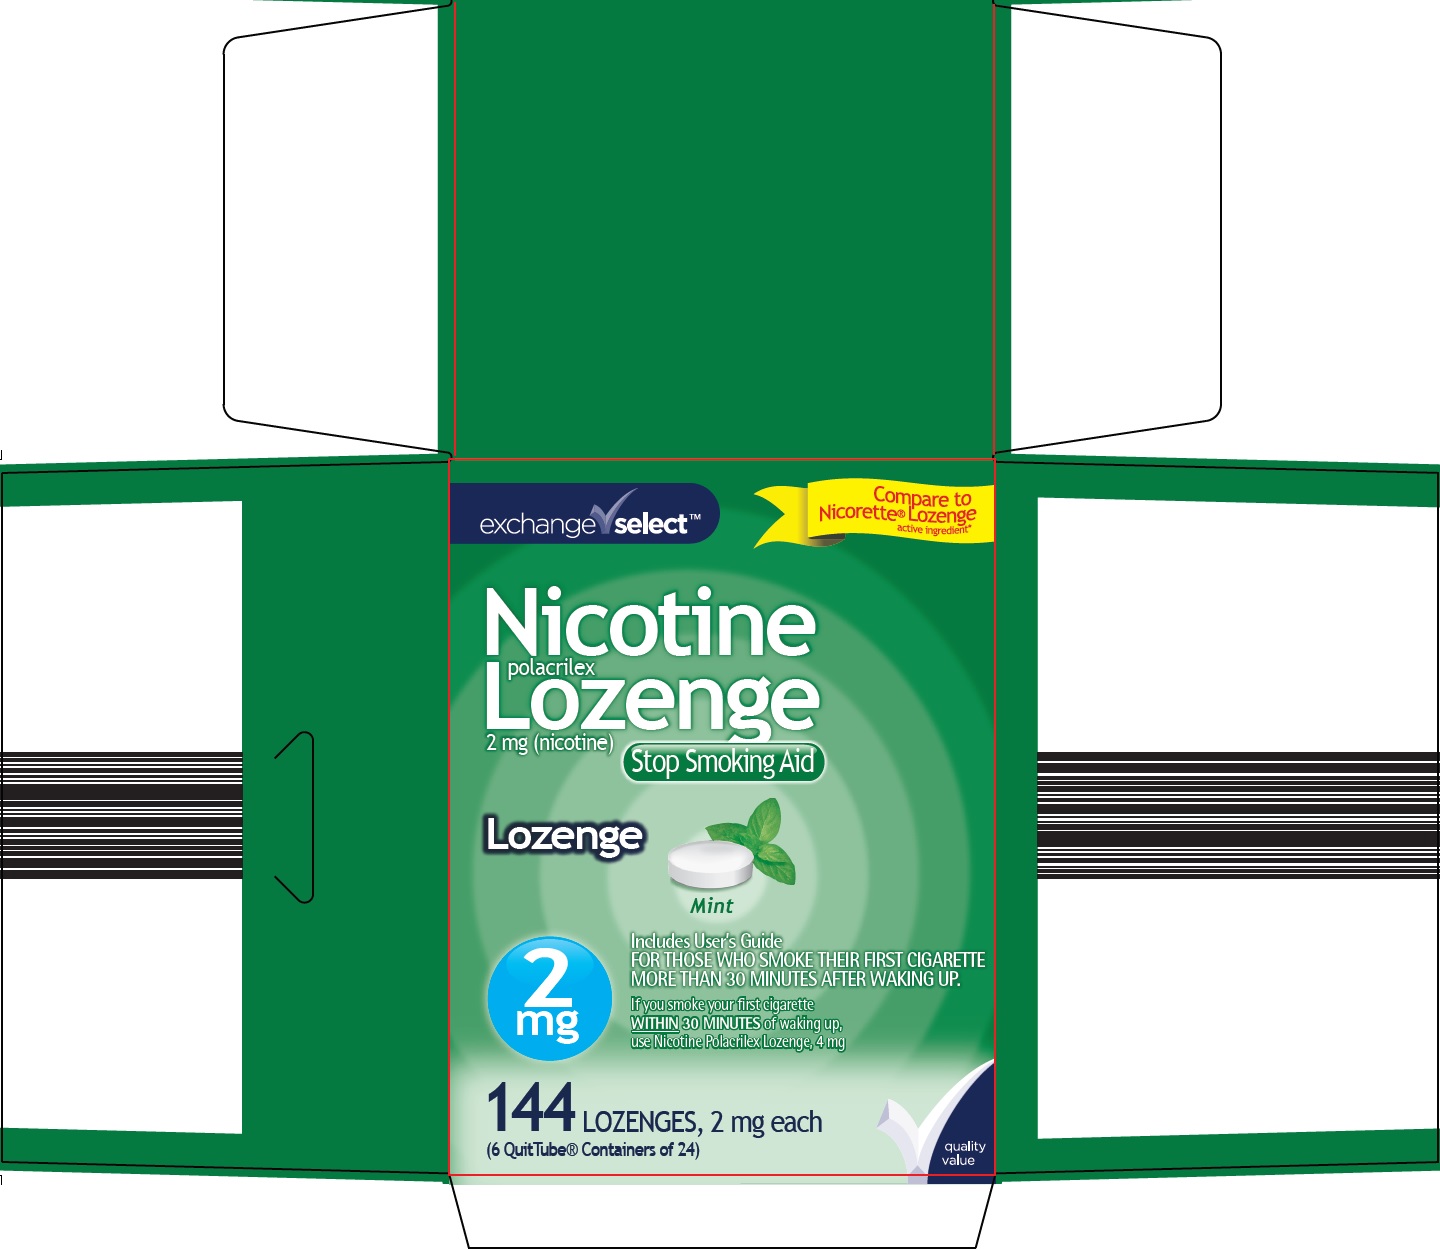 344-cz-nicotine-lozenge-1